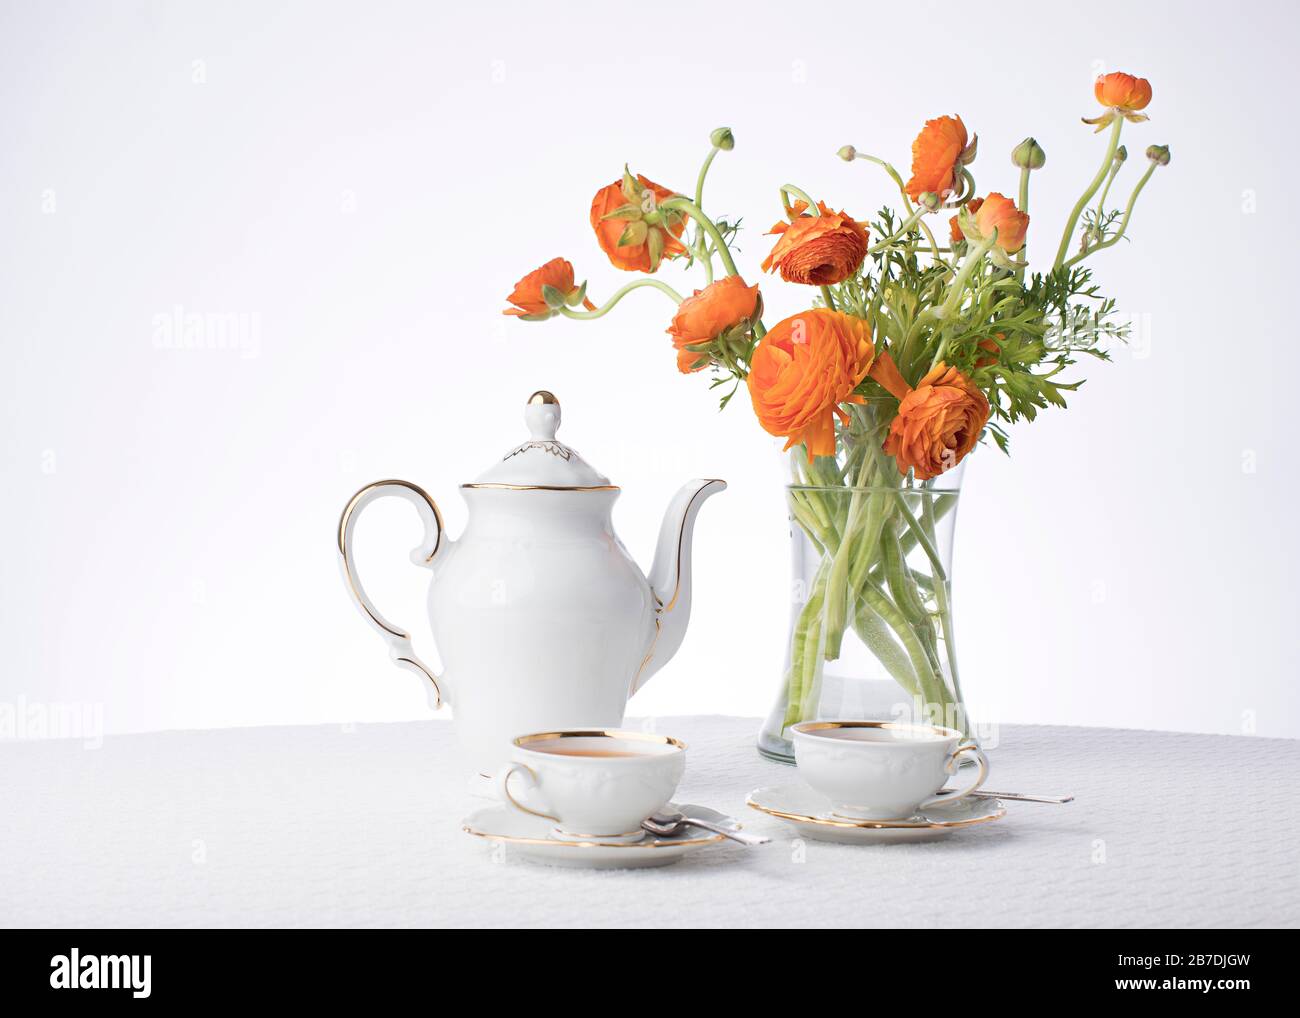 Sauberes, klares Weiß mit goldenem Metallic-Besatz zeigt Tee für zwei Personen mit frischen orangefarbenen Blumen in einer hohen klaren Vase auf weißem Studiohintergrund Stockfoto